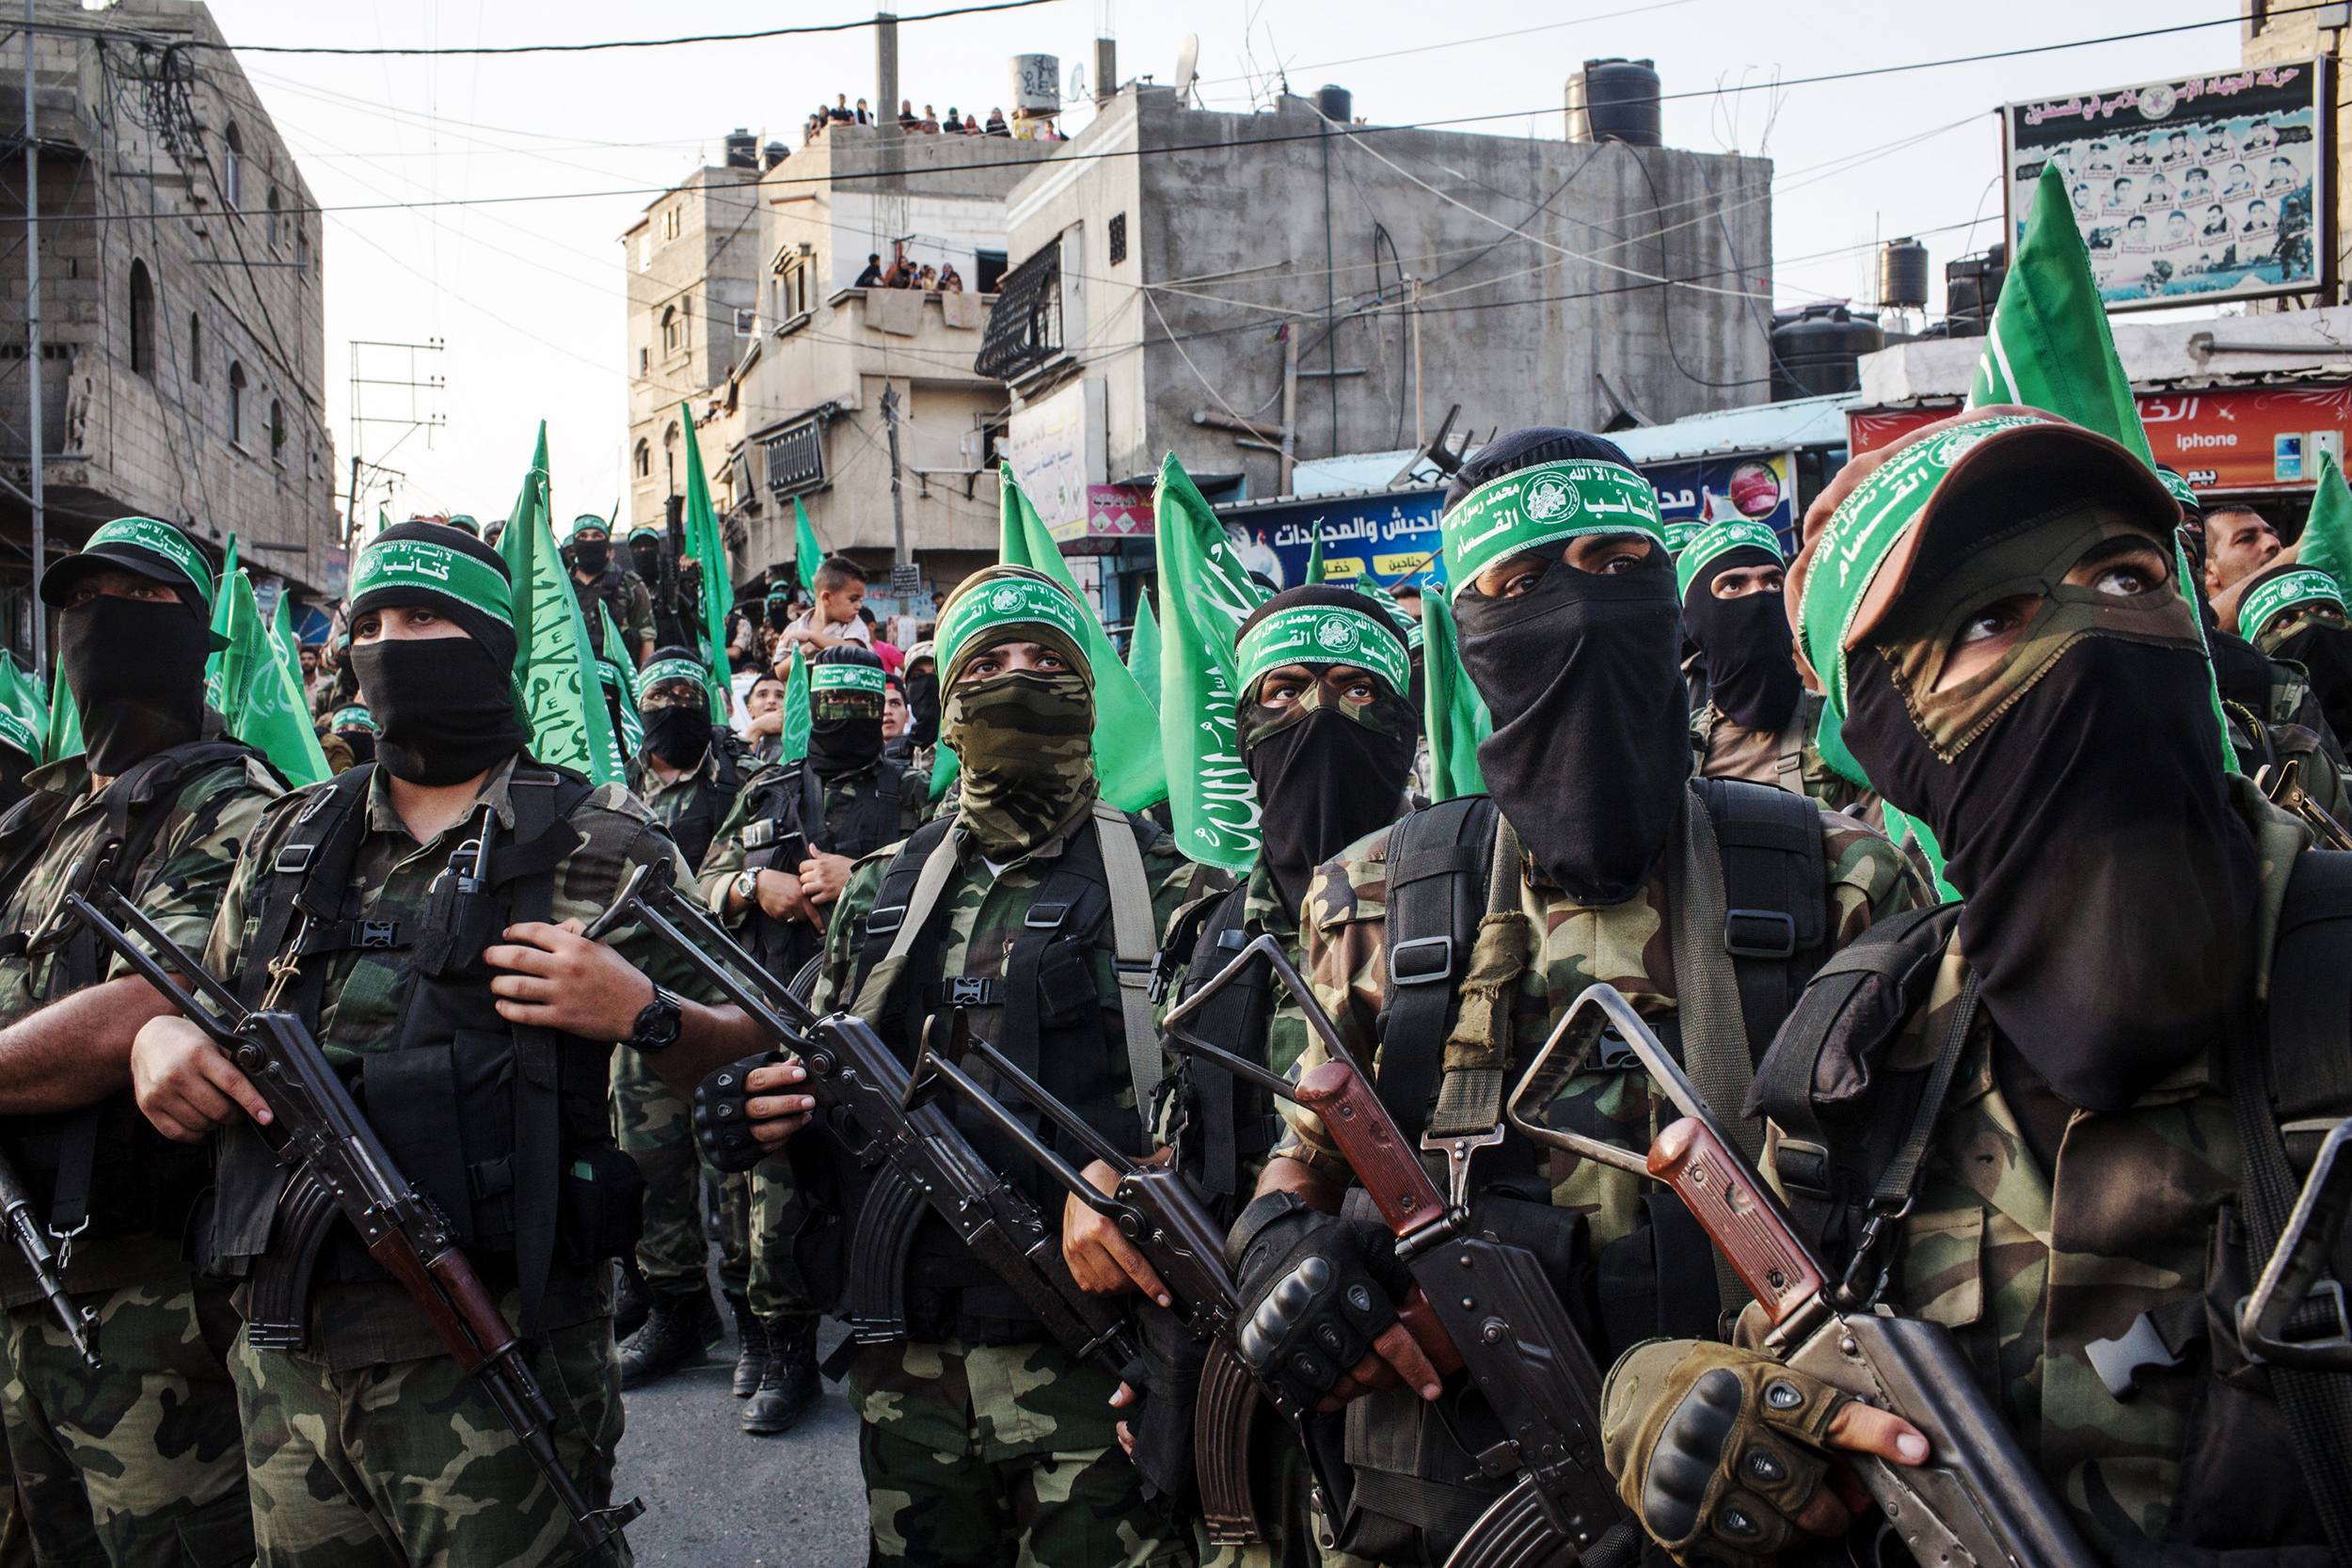 Teroriștii Hamas ar fi fost învățați de un ghid cum să tortureze ostaticii. Copiii israelieni, principalele ținte